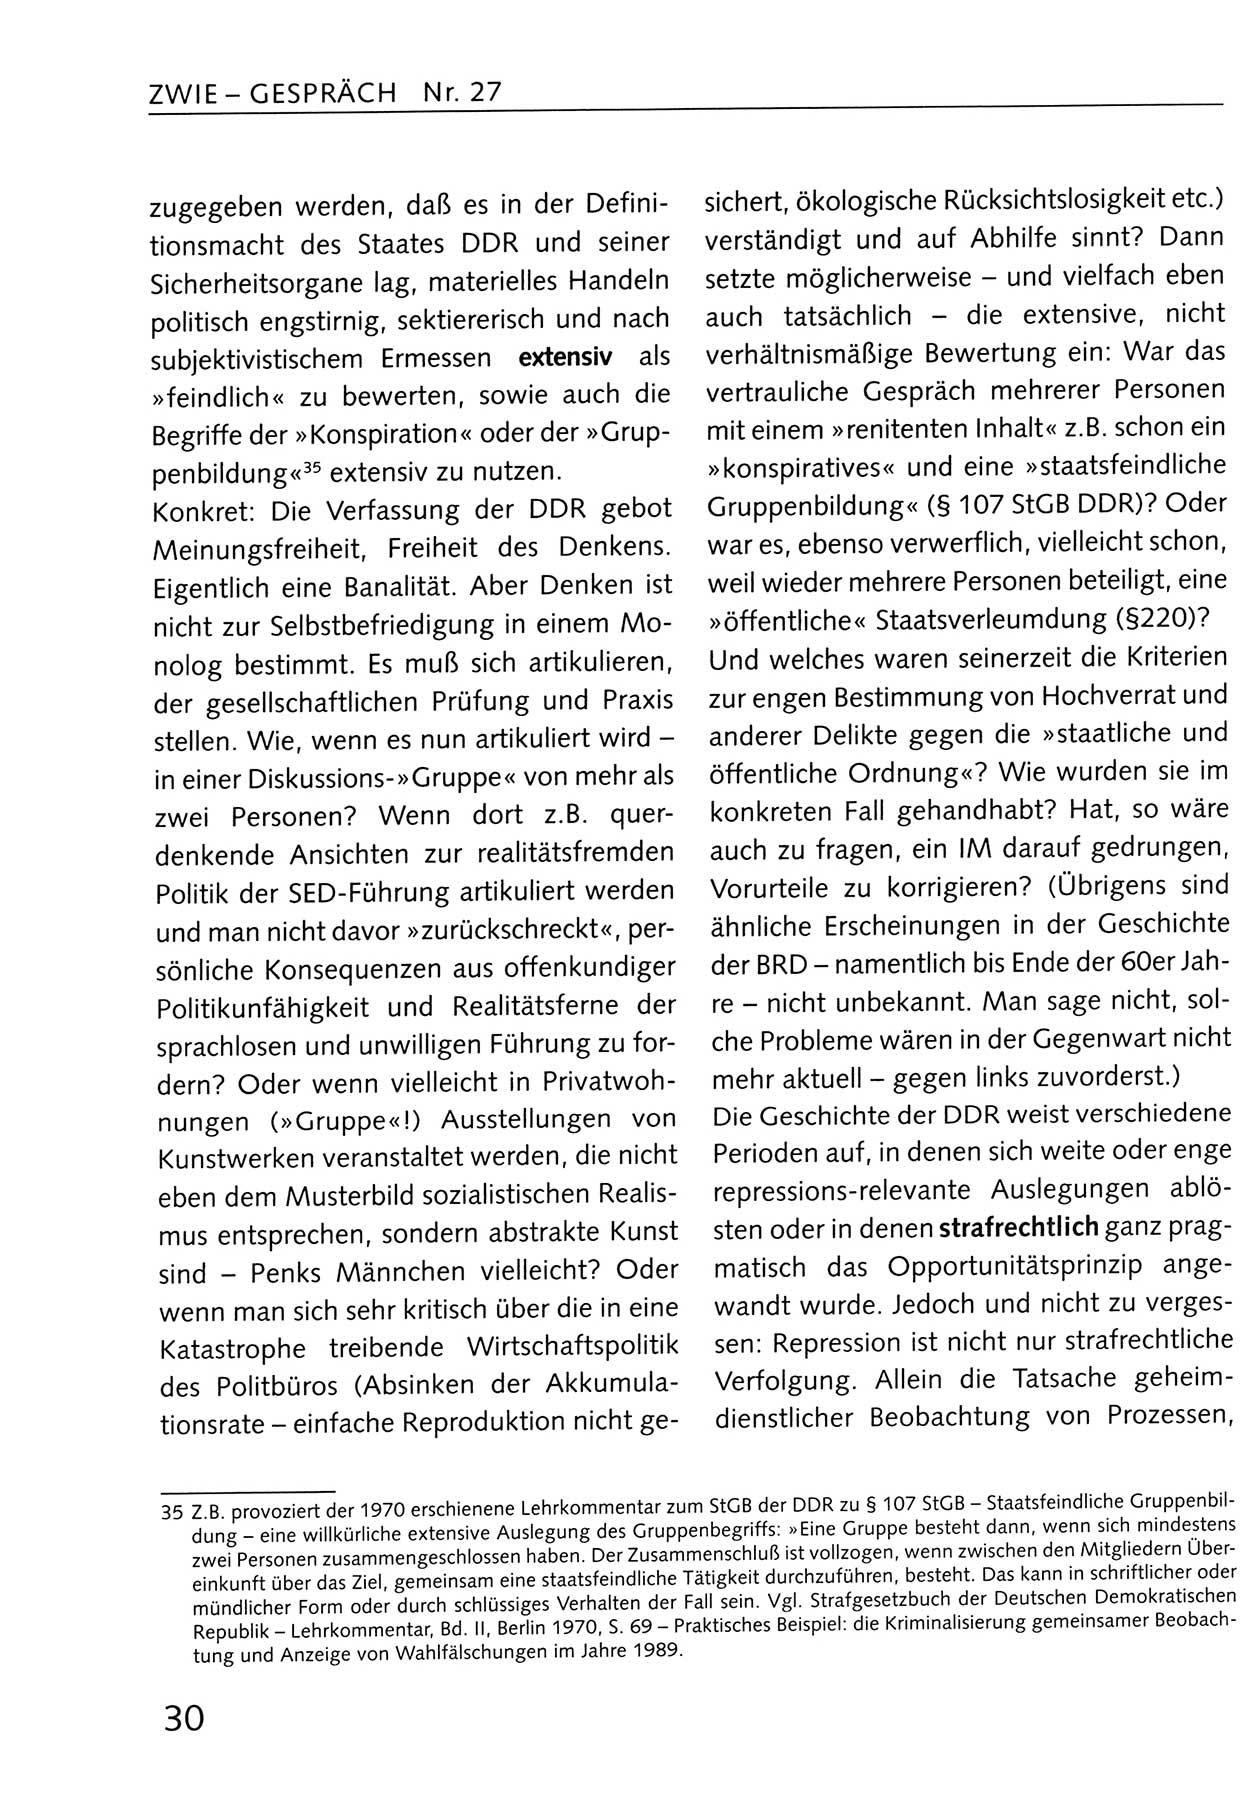 Zwie-Gespräch, Beiträge zum Umgang mit der Staatssicherheits-Vergangenheit [Deutsche Demokratische Republik (DDR)], Ausgabe Nr. 27, Berlin 1995, Seite 30 (Zwie-Gespr. Ausg. 27 1995, S. 30)